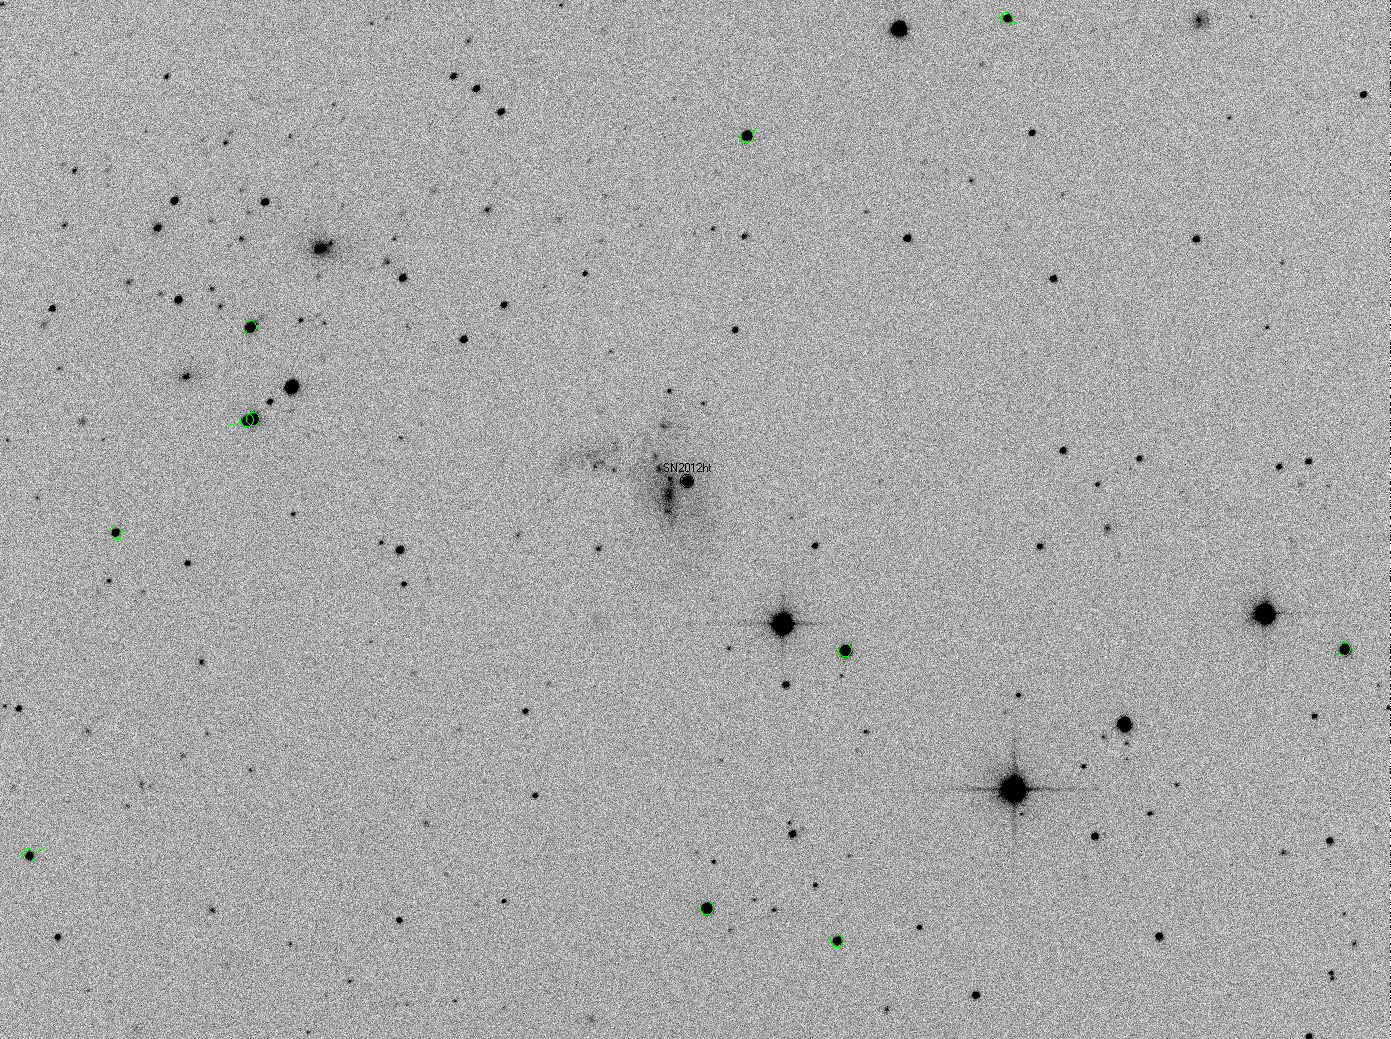 Supernova SN2012ht Messung von Position und Helligkeit